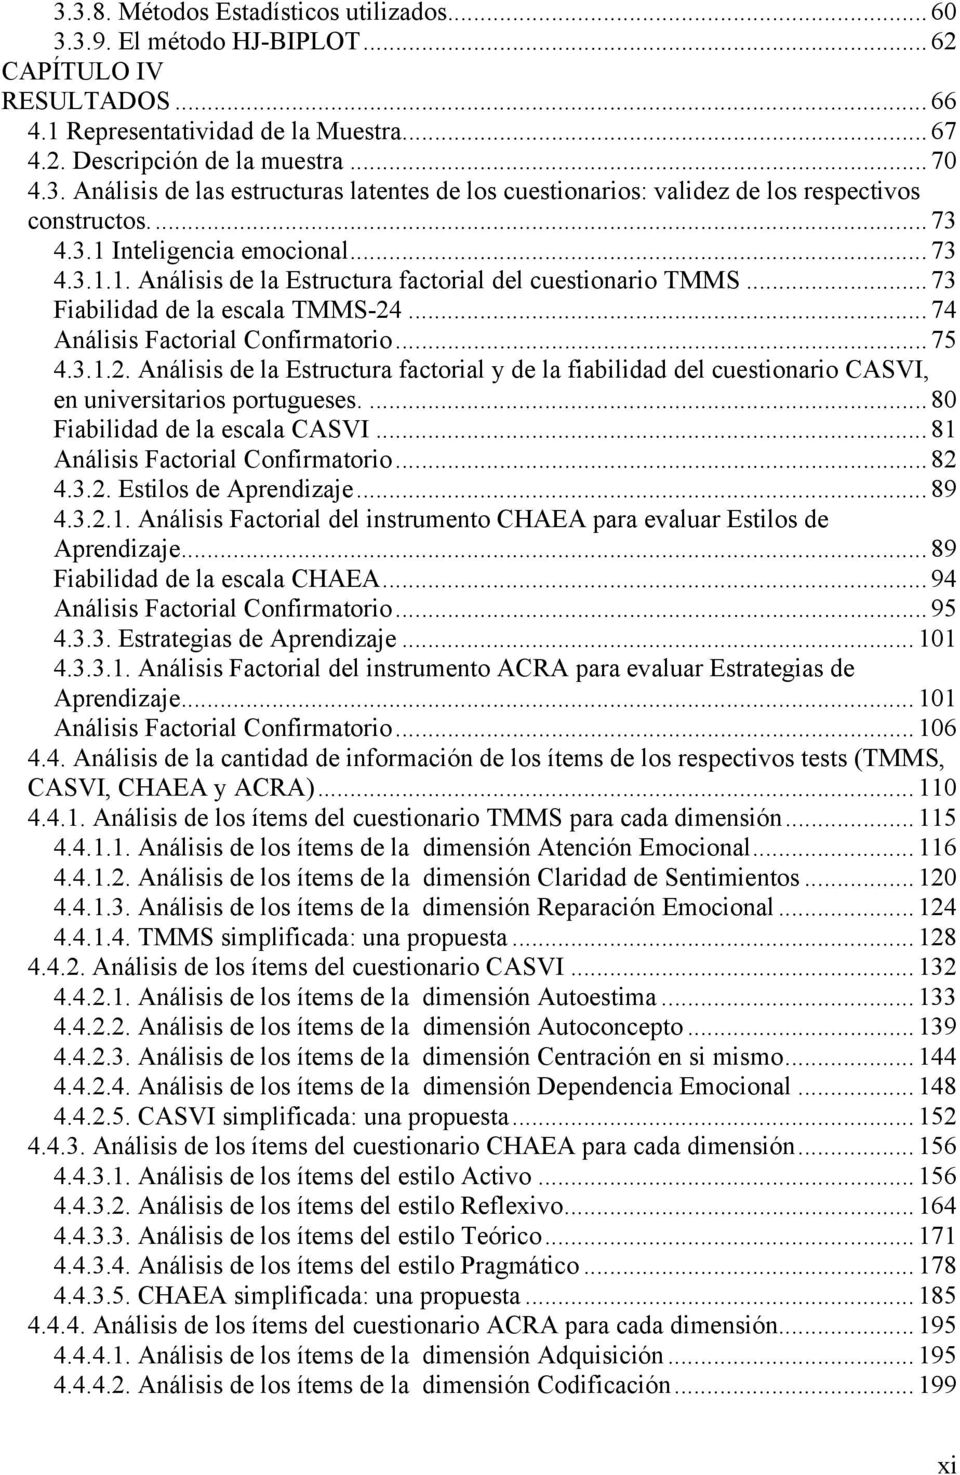 ...74 Análisis Factorial Confirmatorio...75 4.3.1.2. Análisis de la Estructura factorial y de la fiabilidad del cuestionario CASVI, en universitarios portugueses....80 Fiabilidad de la escala CASVI.